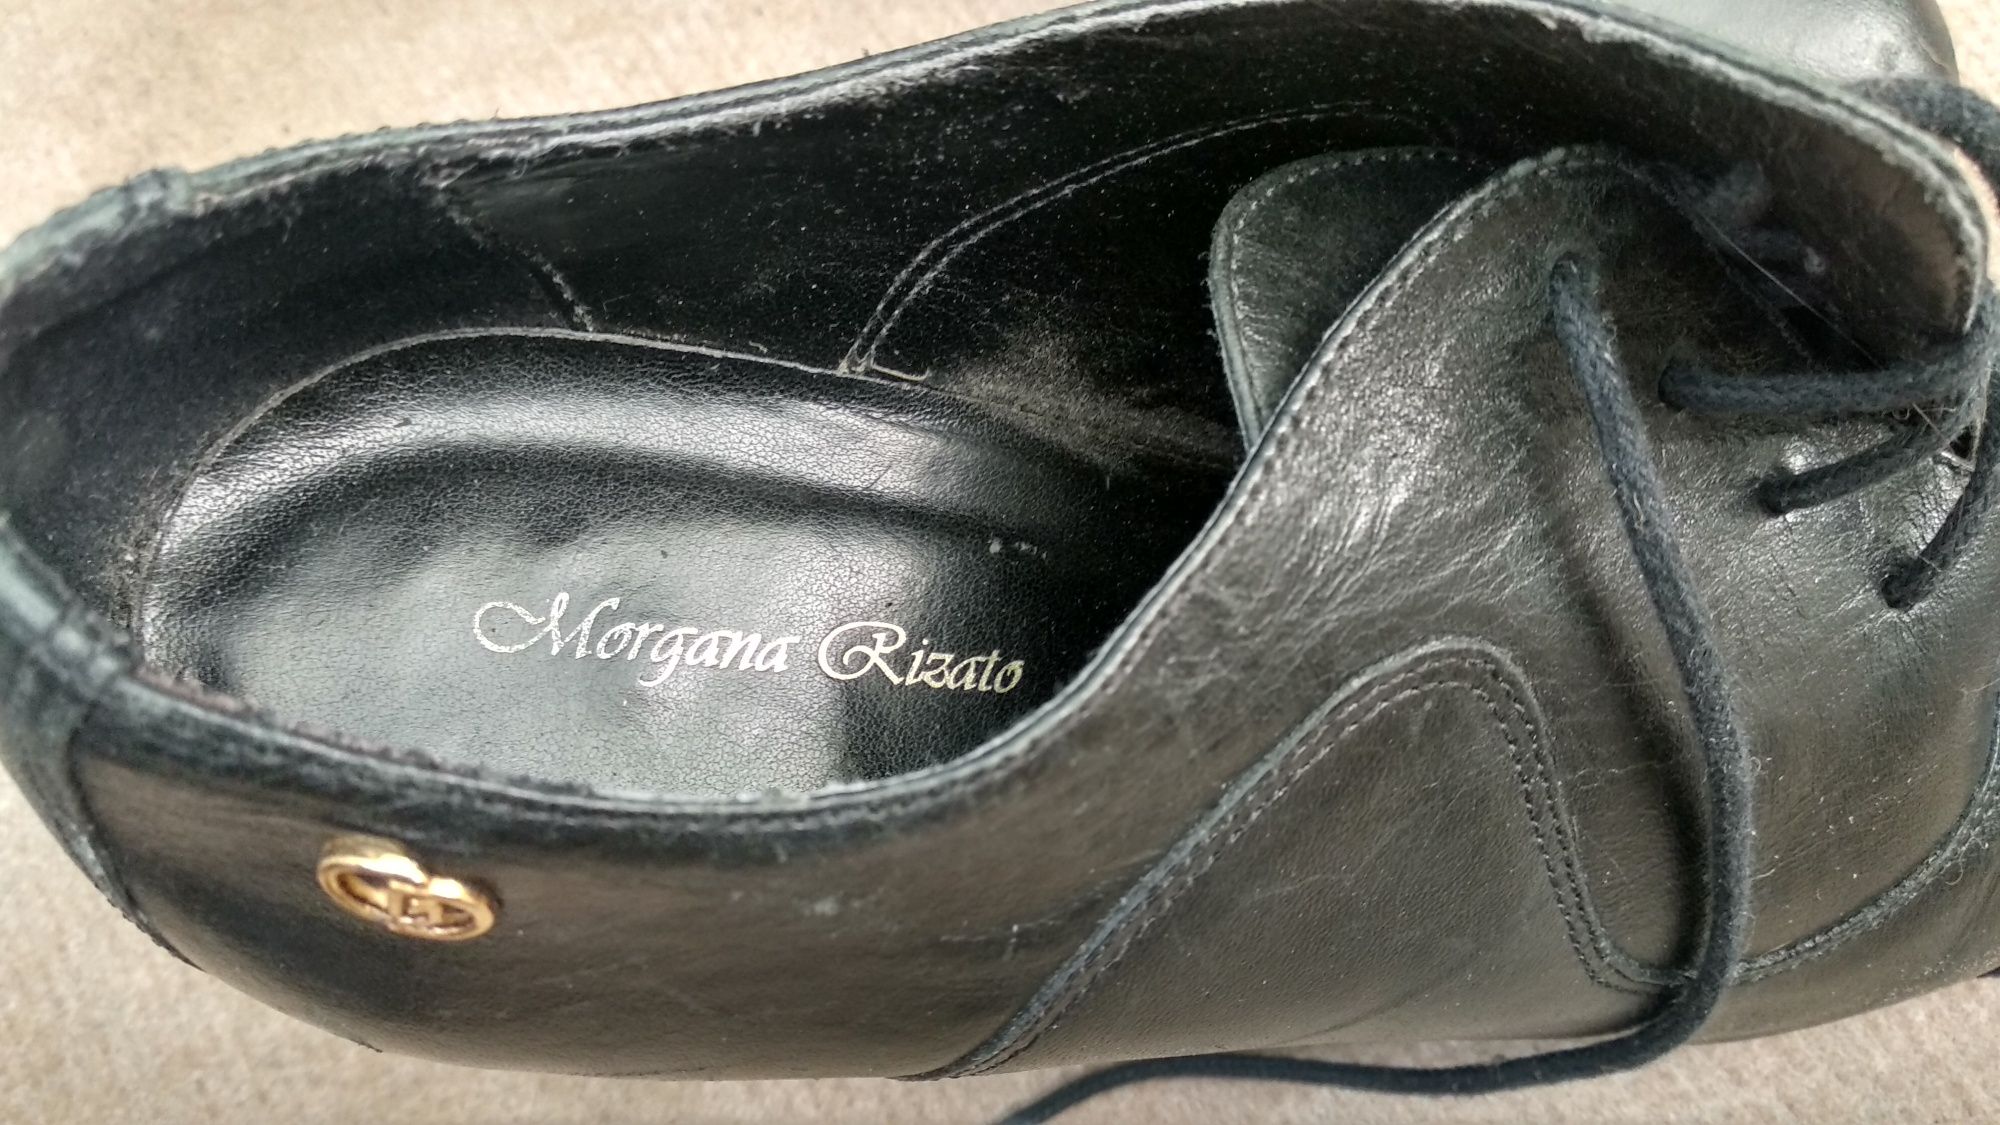 Sapato pele original Morgana Rizato Brazil mulher